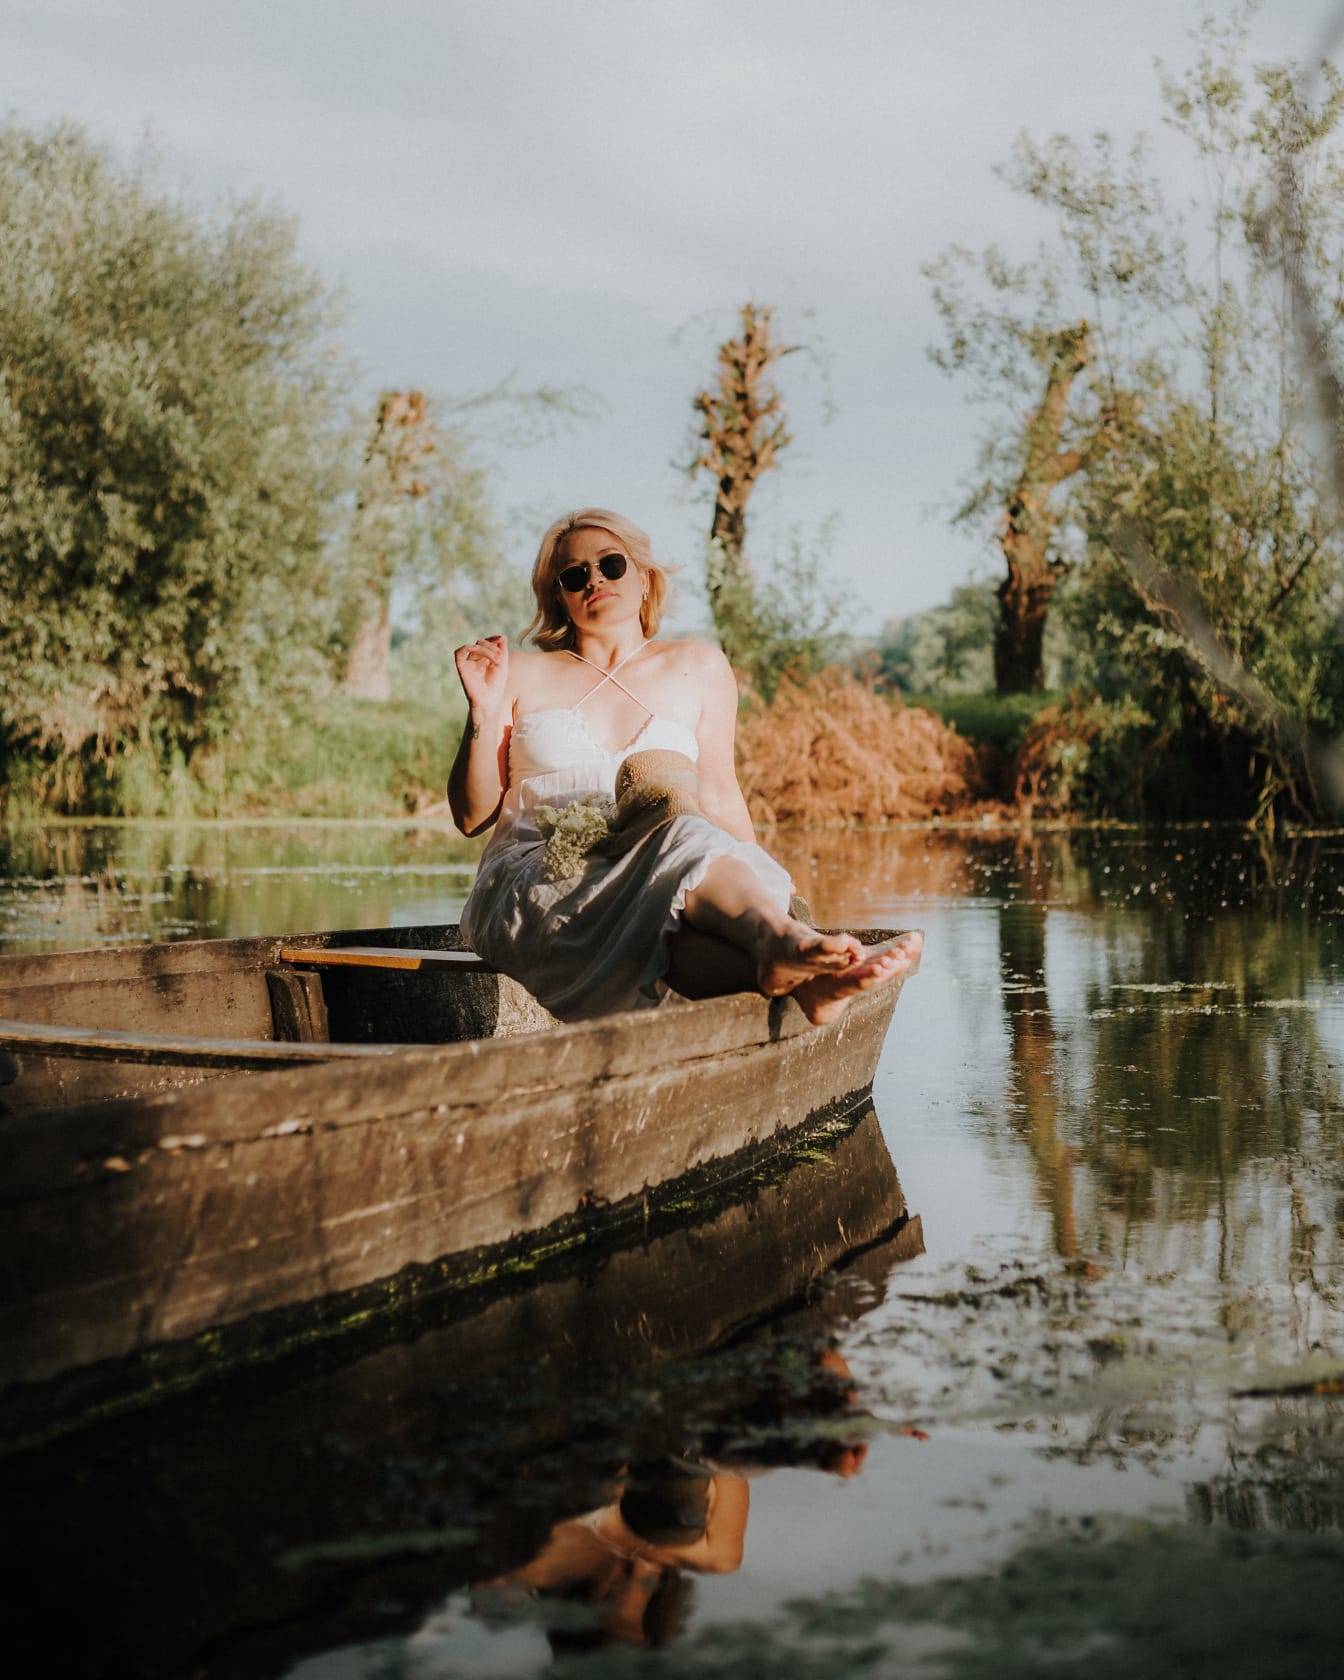 Bionda in posa seduta in barca di legno in riva al lago